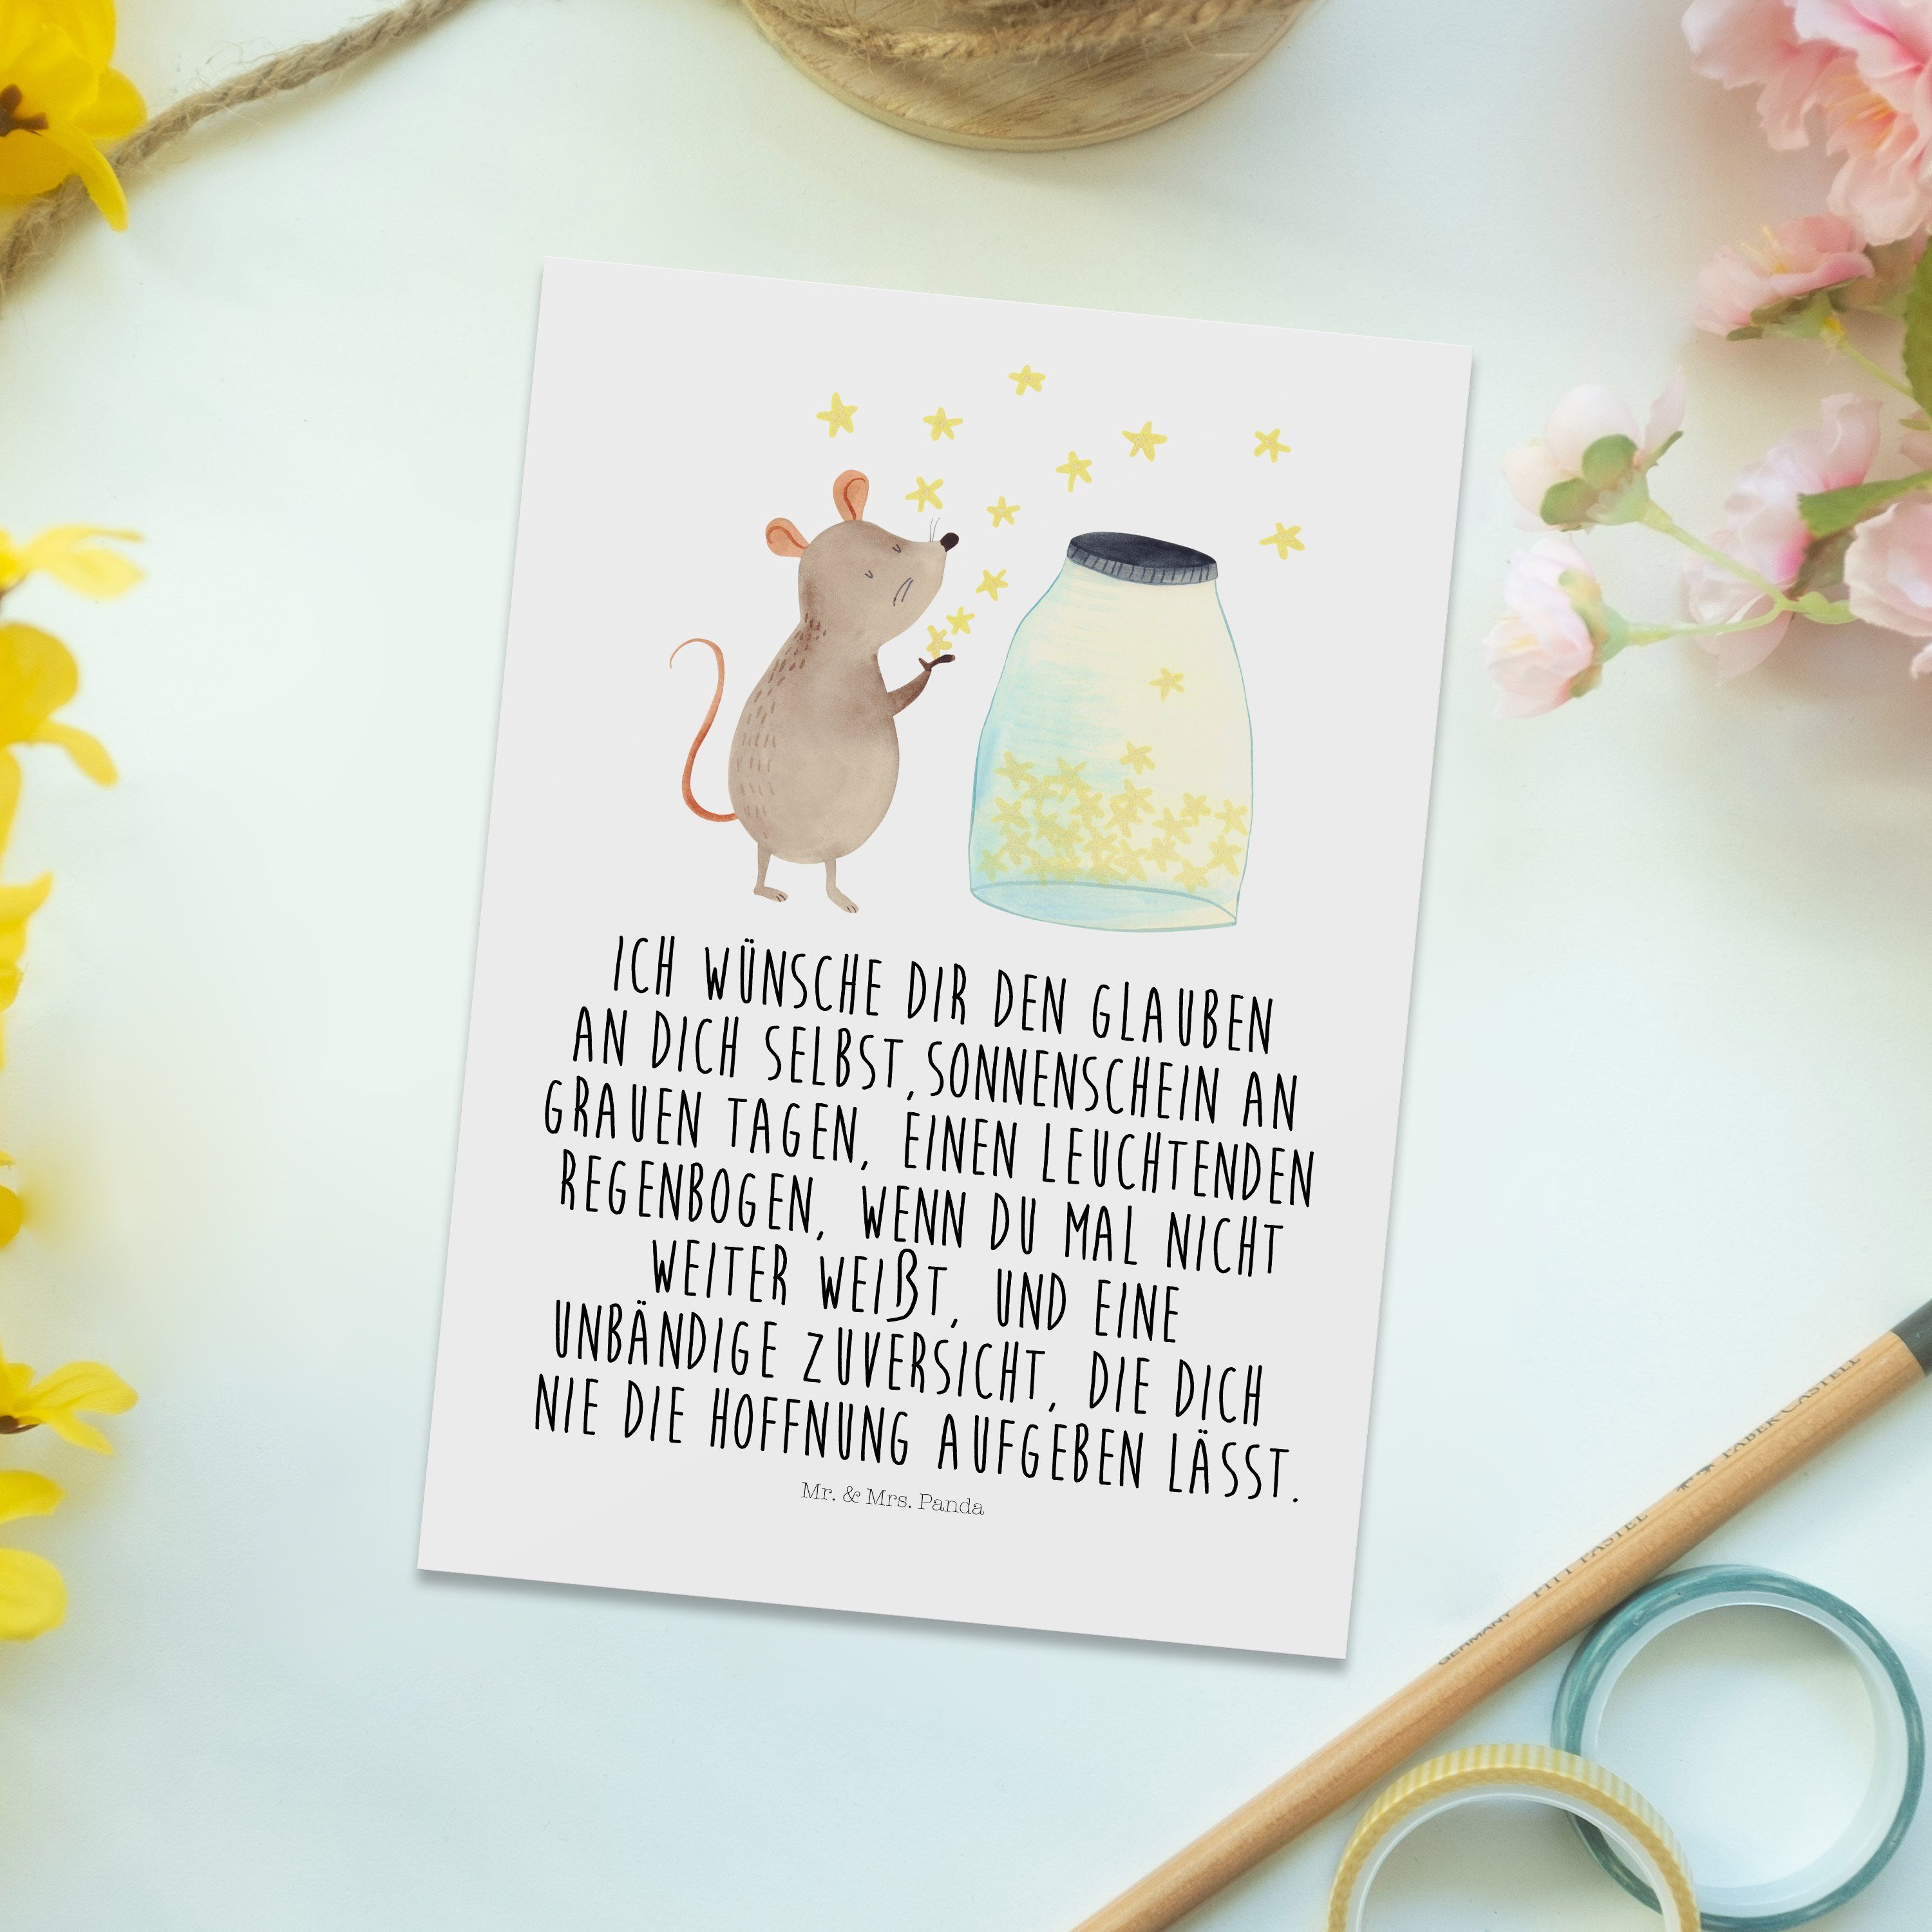 Mr. & Mrs. Panda - Geschenk, lustige Maus Postkarte Gute - Weiß Sterne Laune, Geburtsta Sprüche